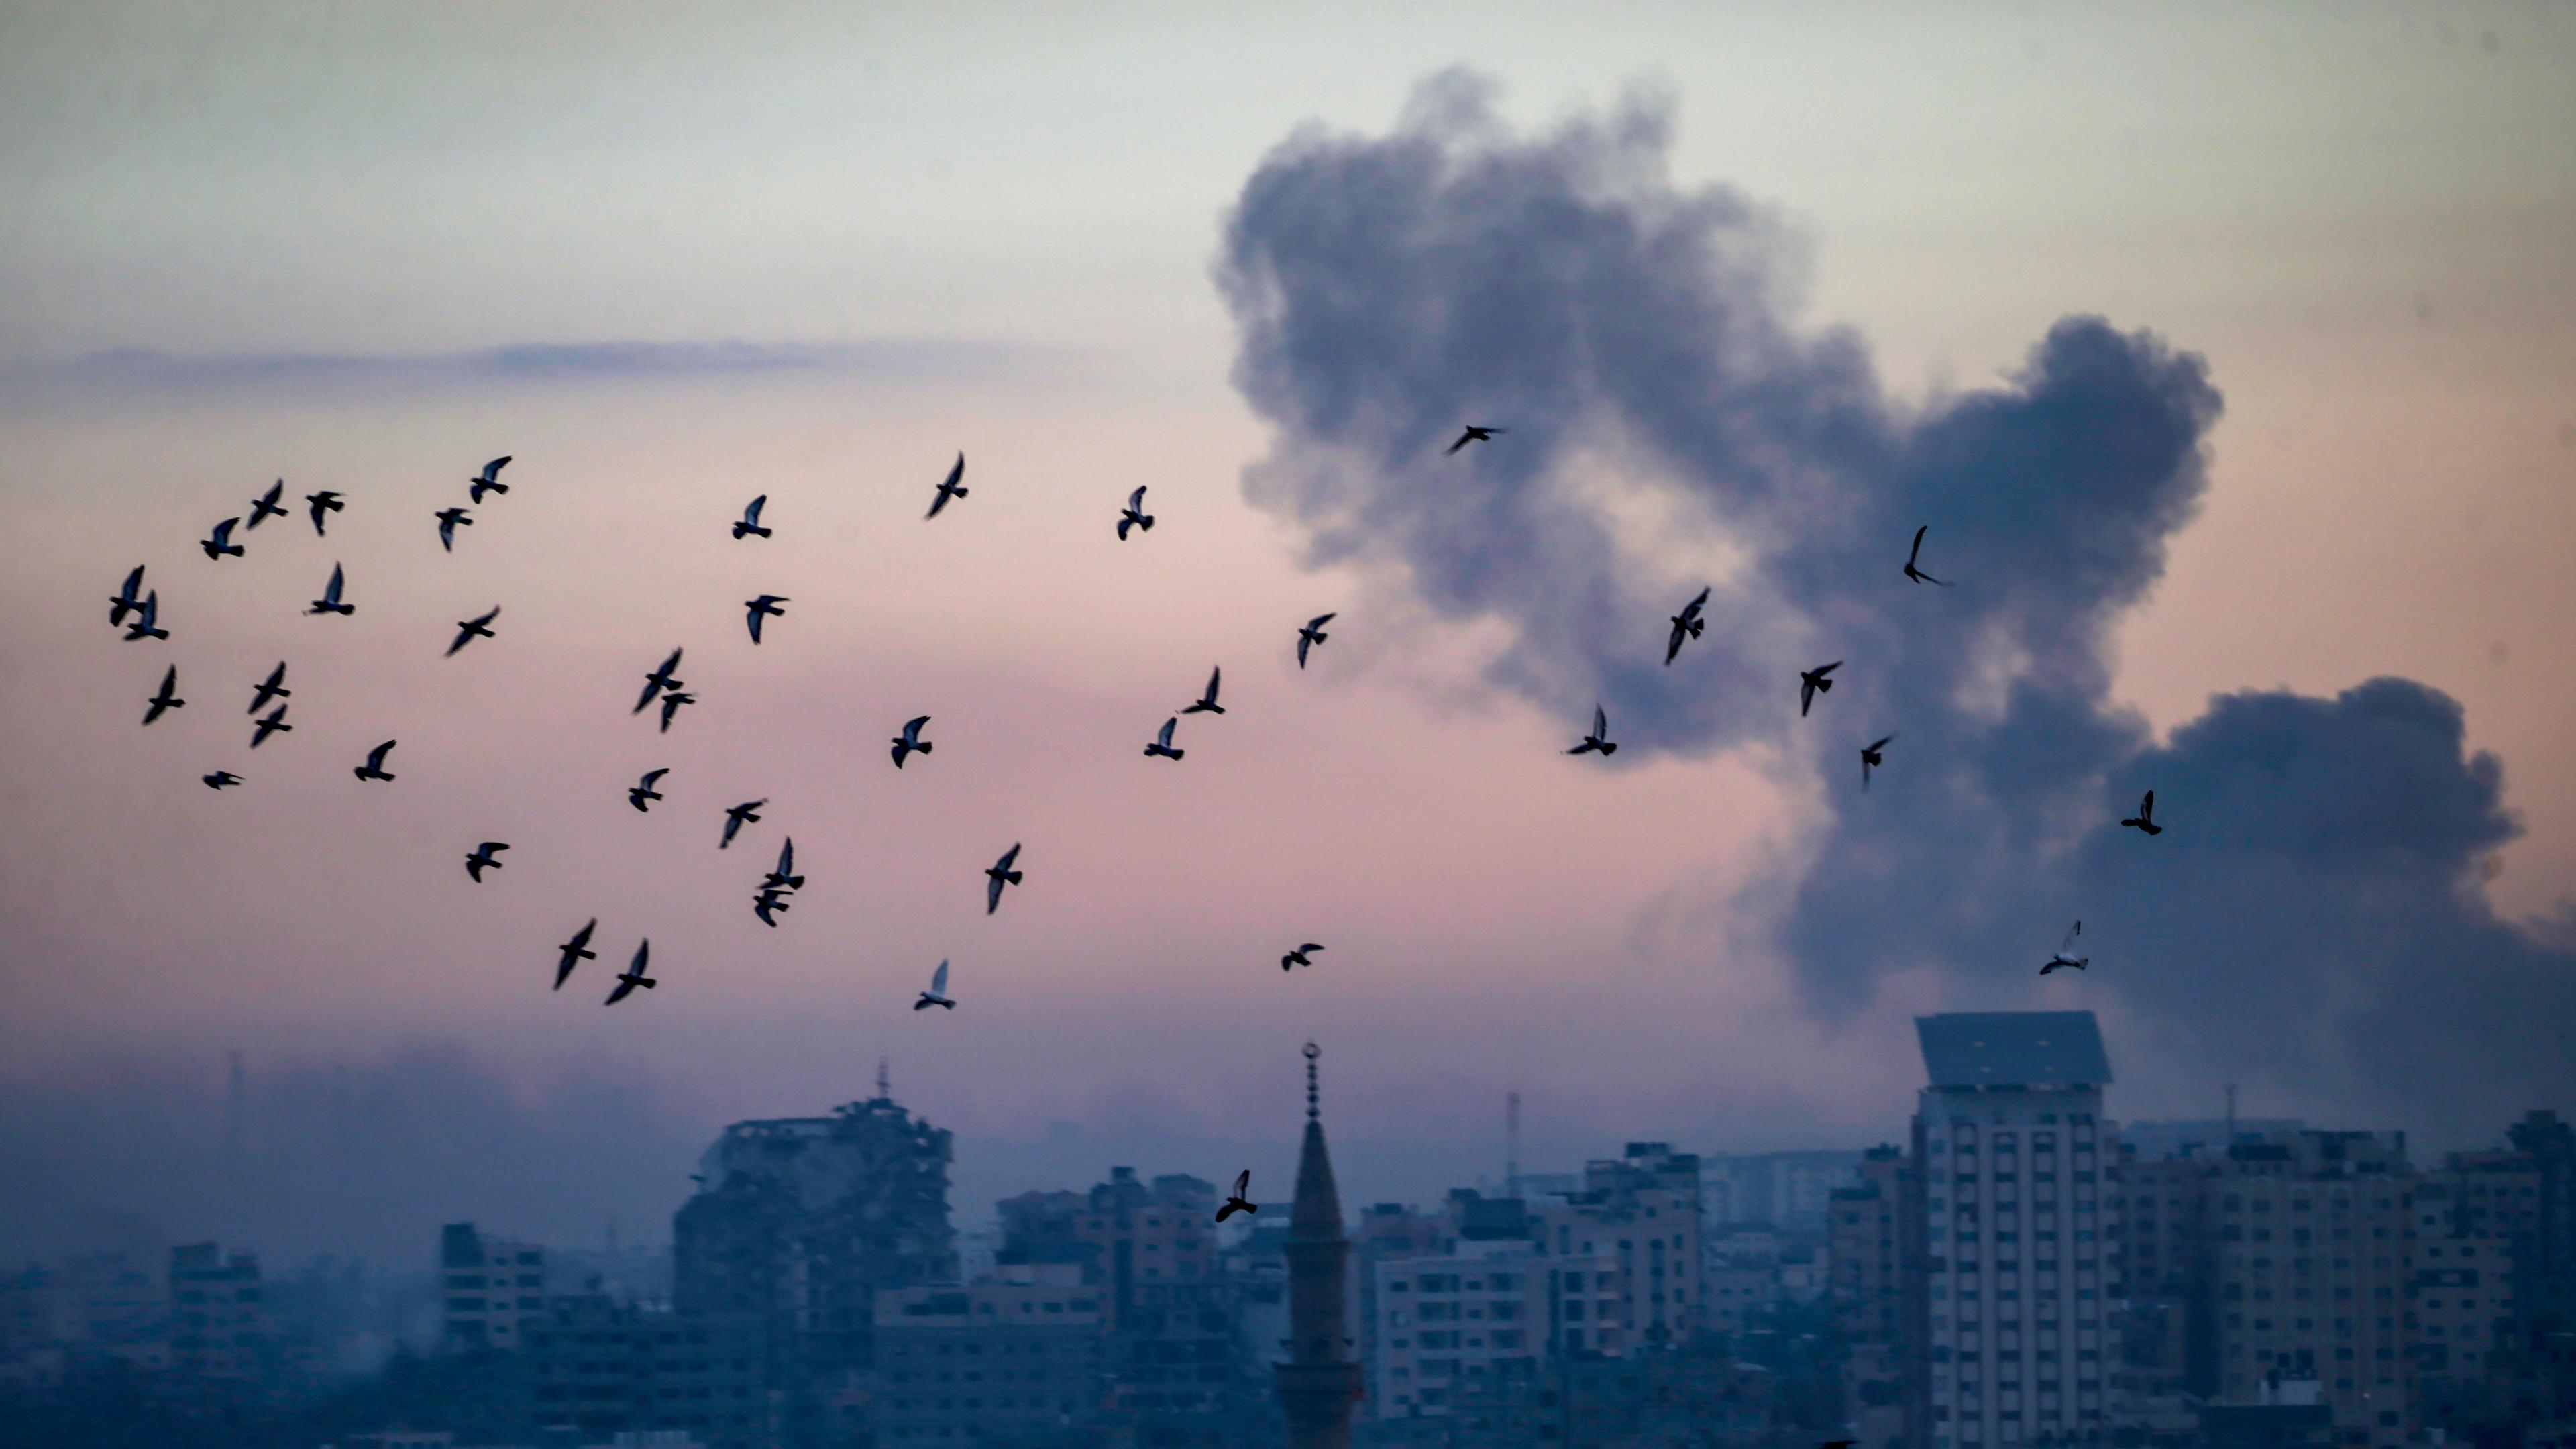 Himmel über dem Gazastreifen mit Rauchwolke und Vogelschwarm